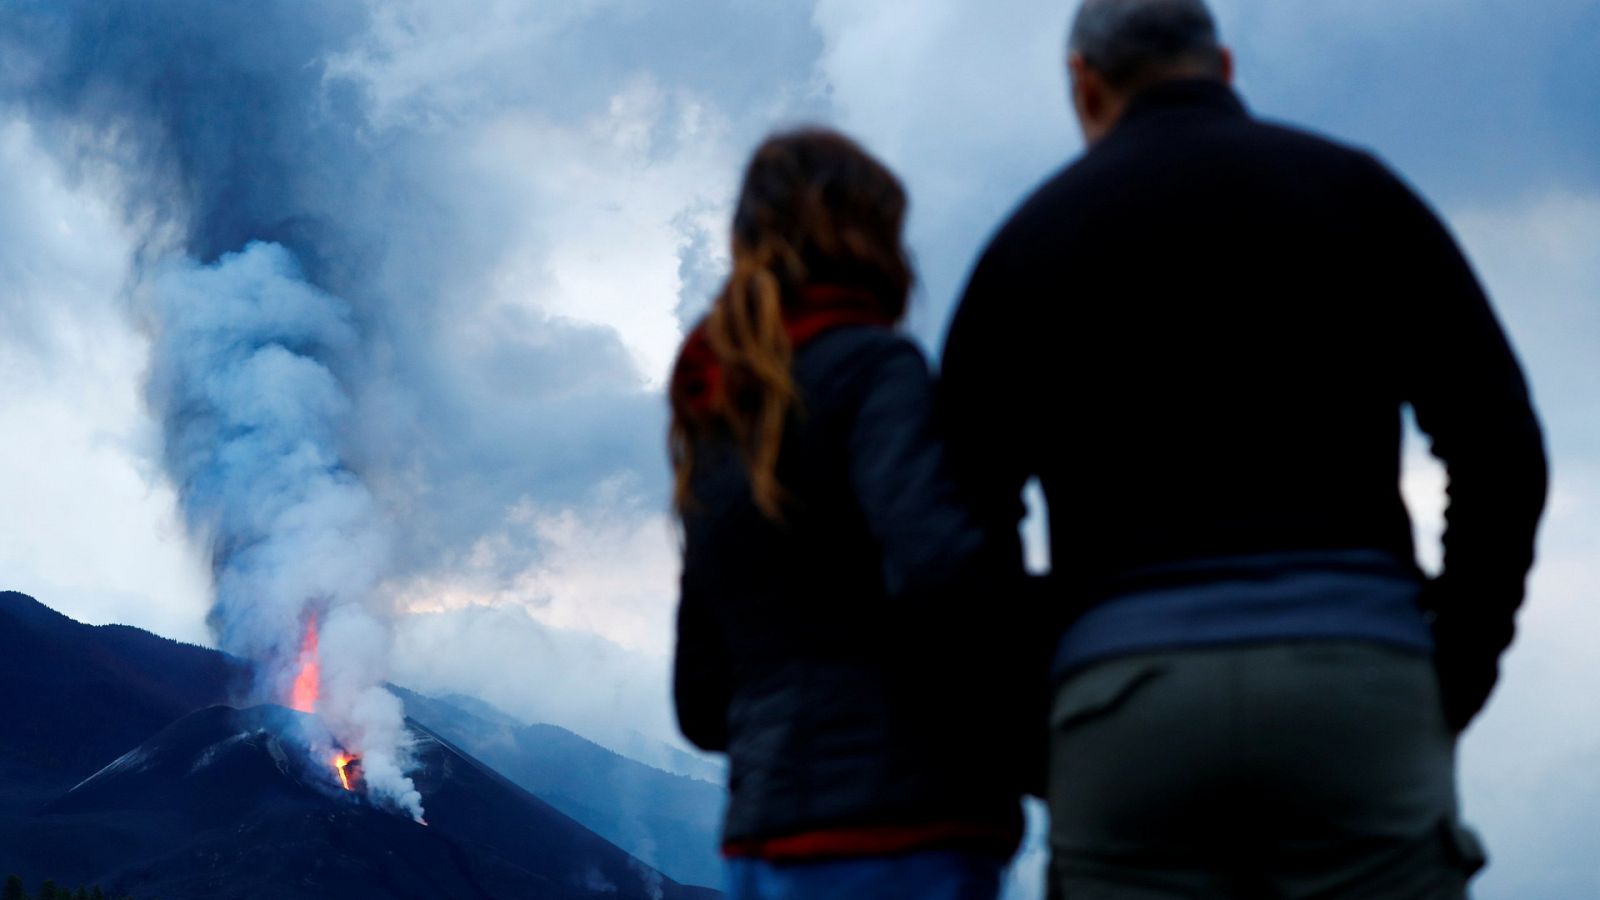 Afectados por el volcán: "De mi casa me he llevado lo importante, mi familia y mis animales"